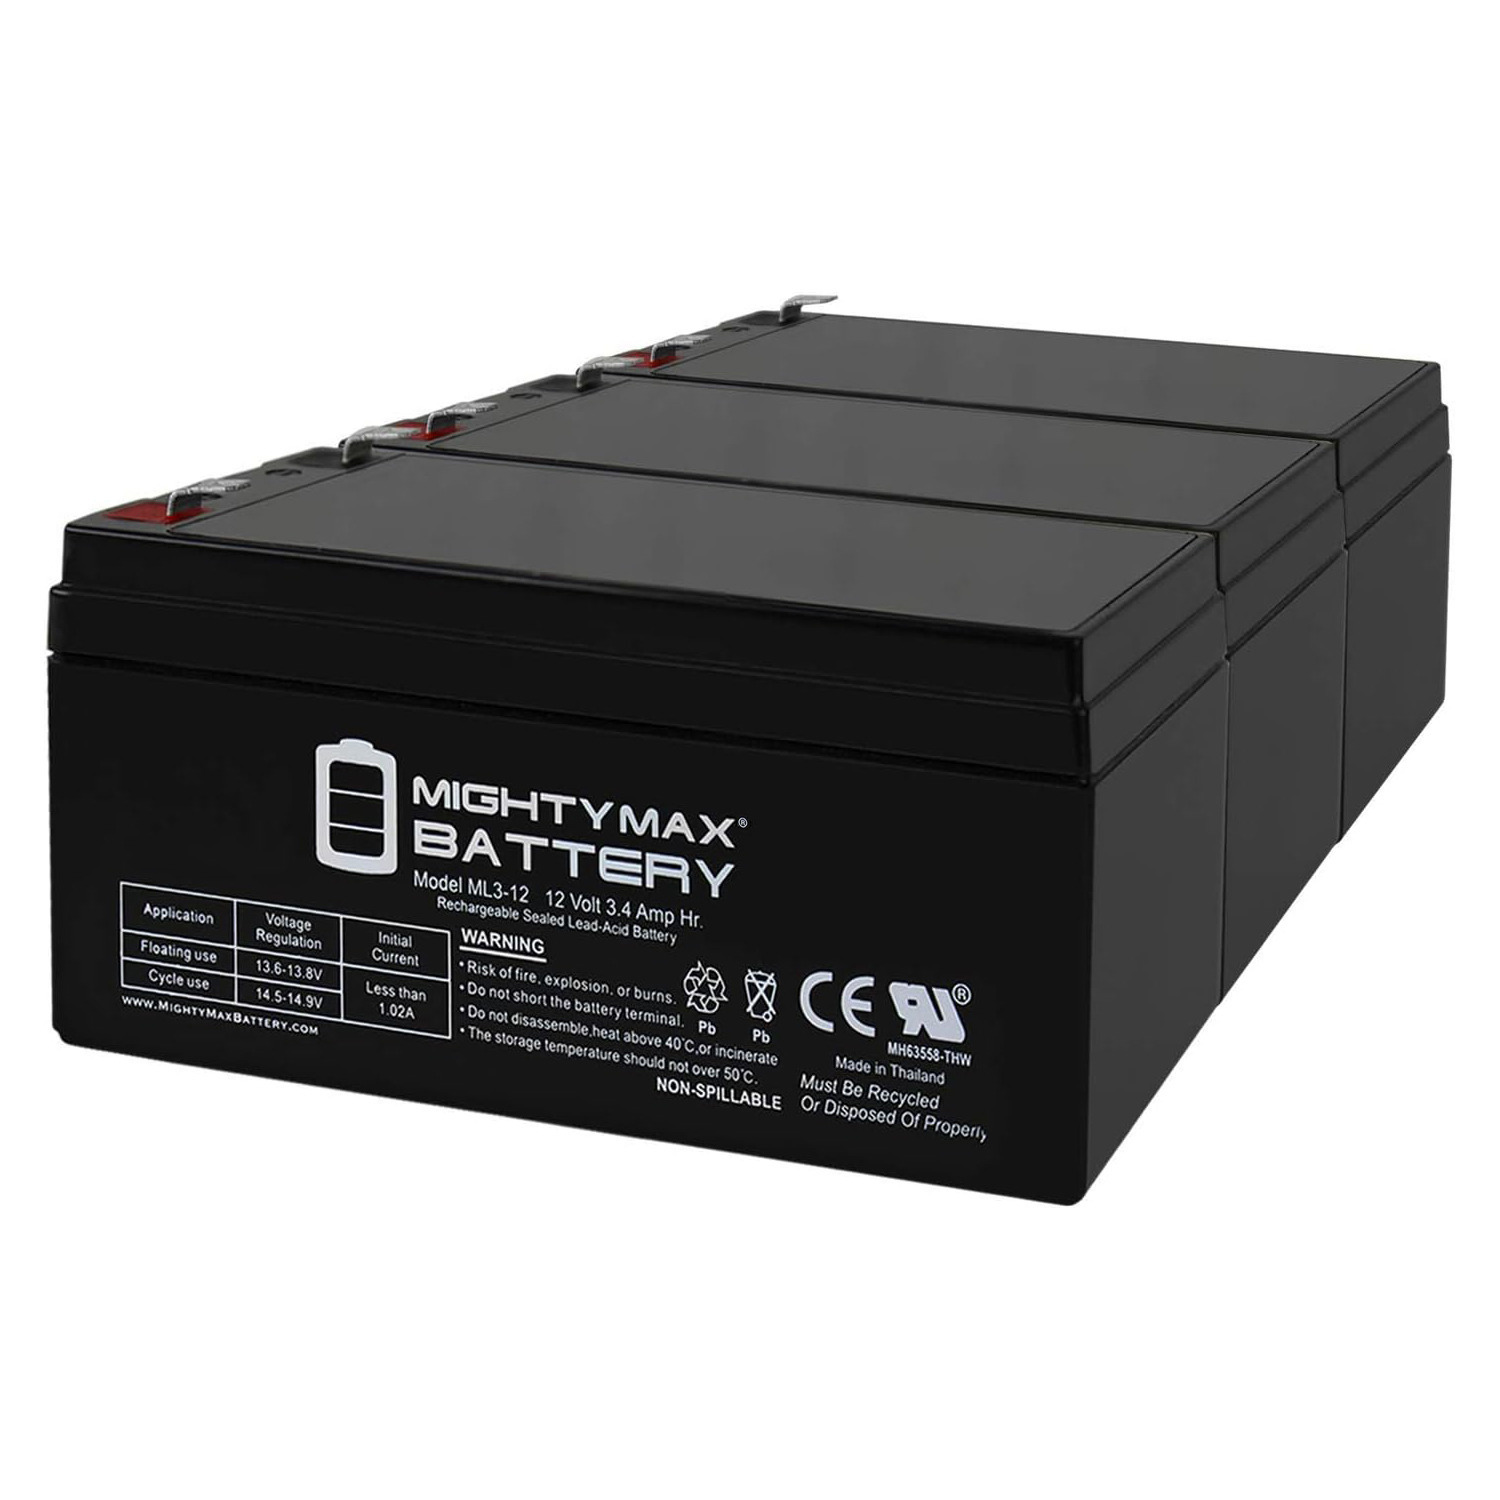 ML3-12 12V 3.4AH SLA Battery for Emergency Exit Lighting Systems - 3 Pack